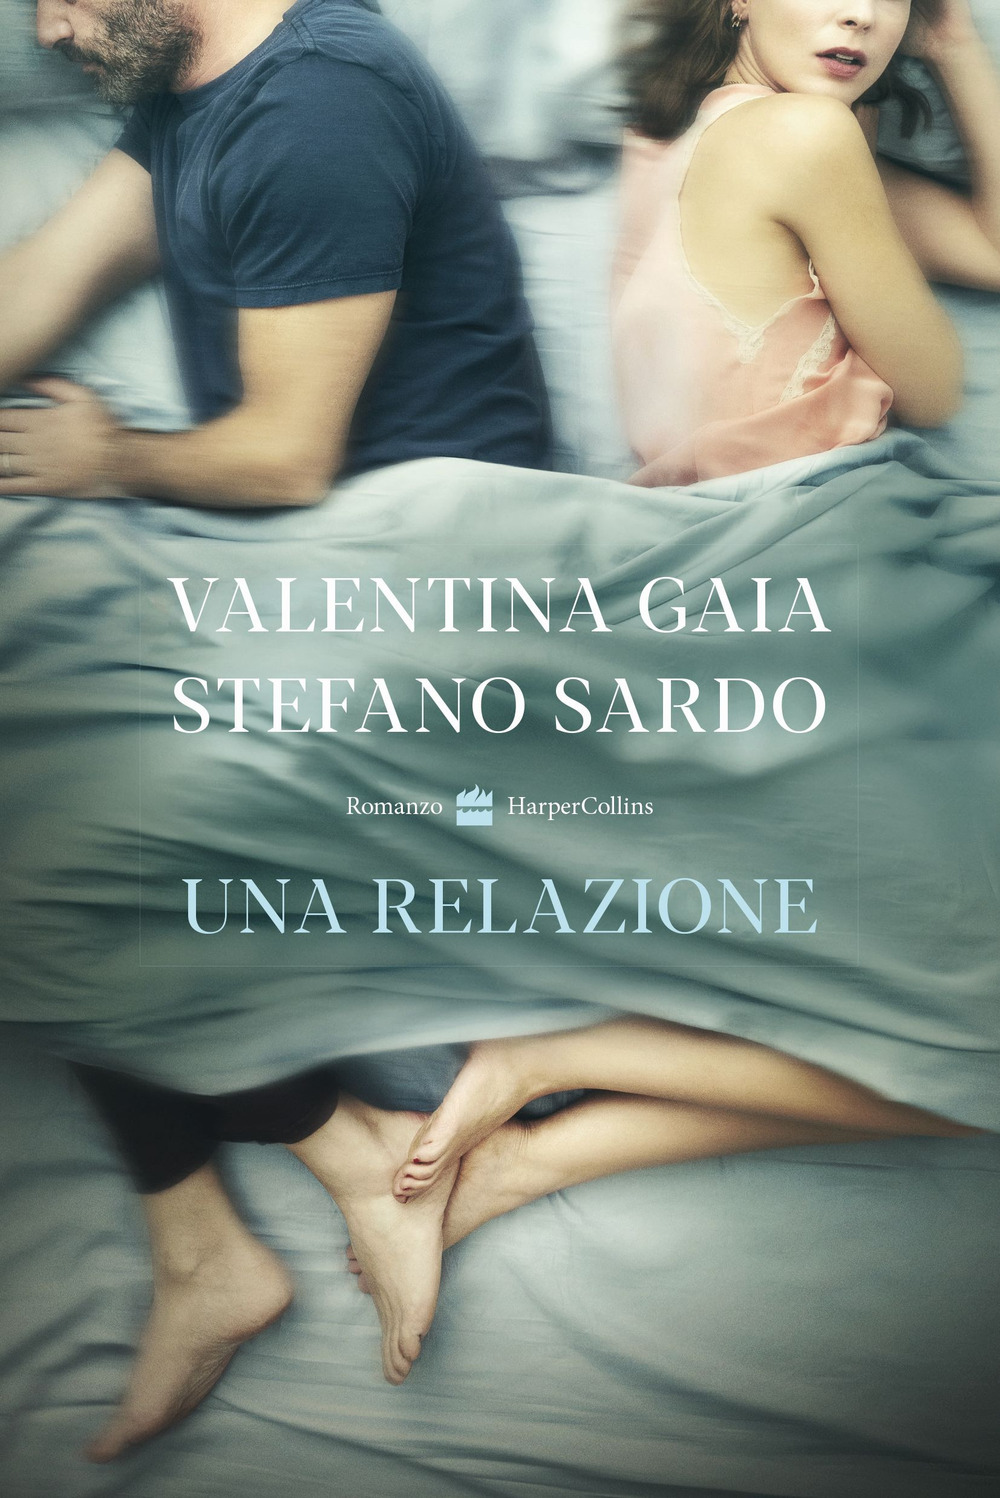 Libri Gaia Valentina / Stefano Sardo - Una Relazione NUOVO SIGILLATO, EDIZIONE DEL 02/09/2021 SUBITO DISPONIBILE